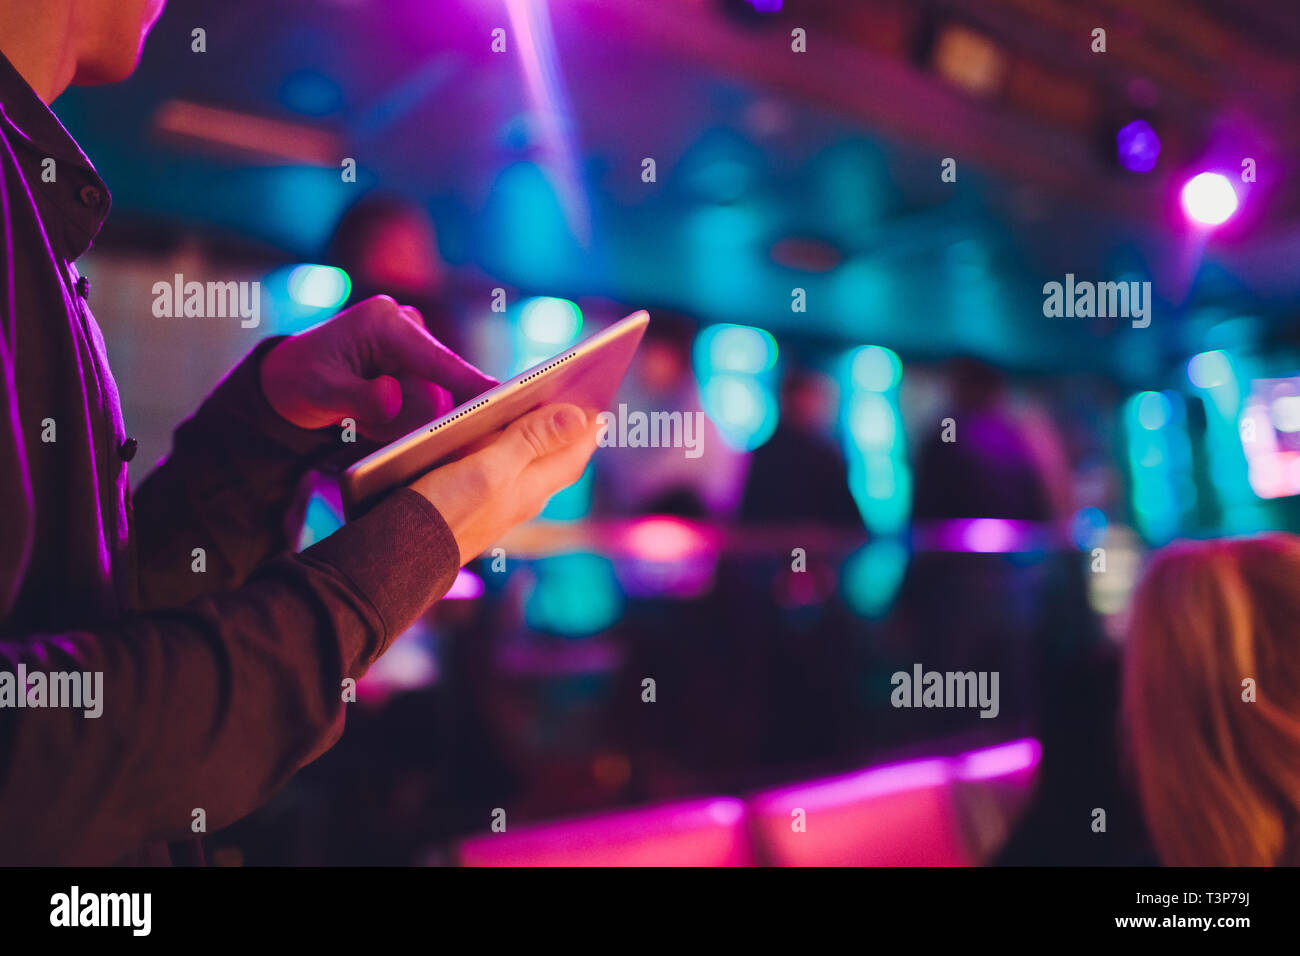 Veranstaltung Tuner Controlling Sound Von Tablet Auf Dem Hintergrund Der Karaoke Bar Stockfotografie Alamy